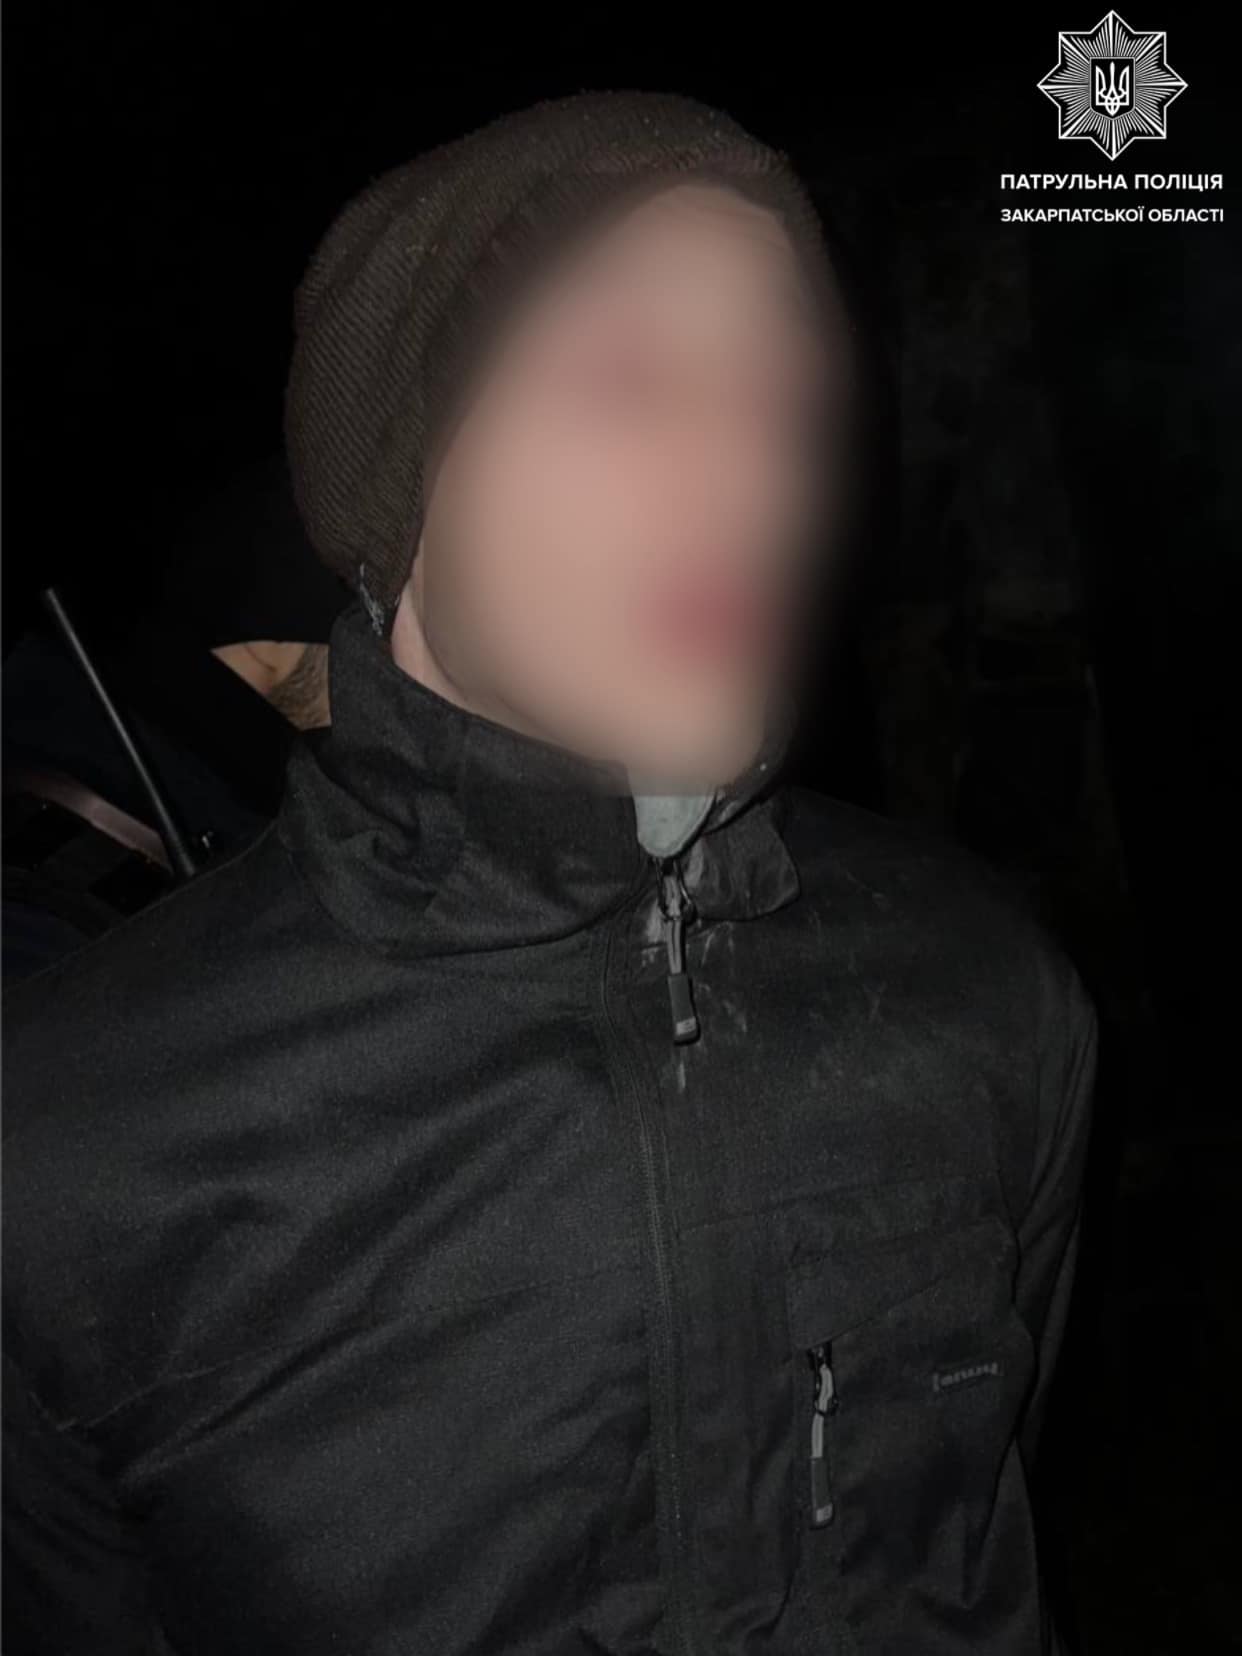 В Ужгороді вночі затримали підозрілого чоловіка, який розбив вікно в чужому будинку (ФОТО)